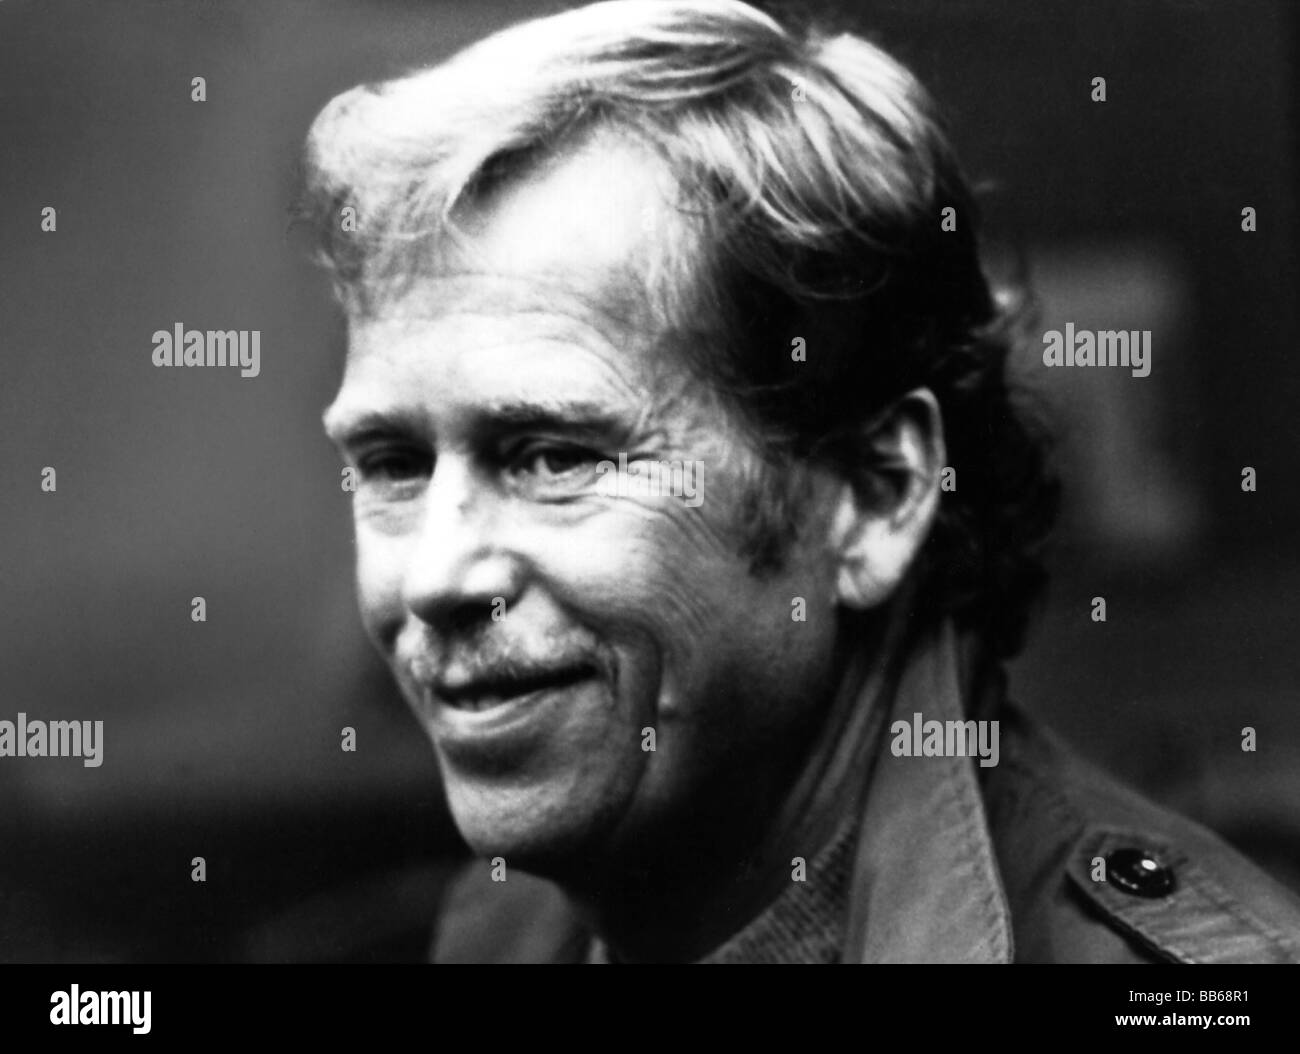 Havel, Vaclav, 5.10.1936 - 18.12.2011, tschechischer Autor/Schriftsteller, Politiker, letzter Präsident der Tschechoslowakei (1989-1992), erster Präsident der Tschechischen Republik (1993-2003), Porträt, 1989, Stockfoto